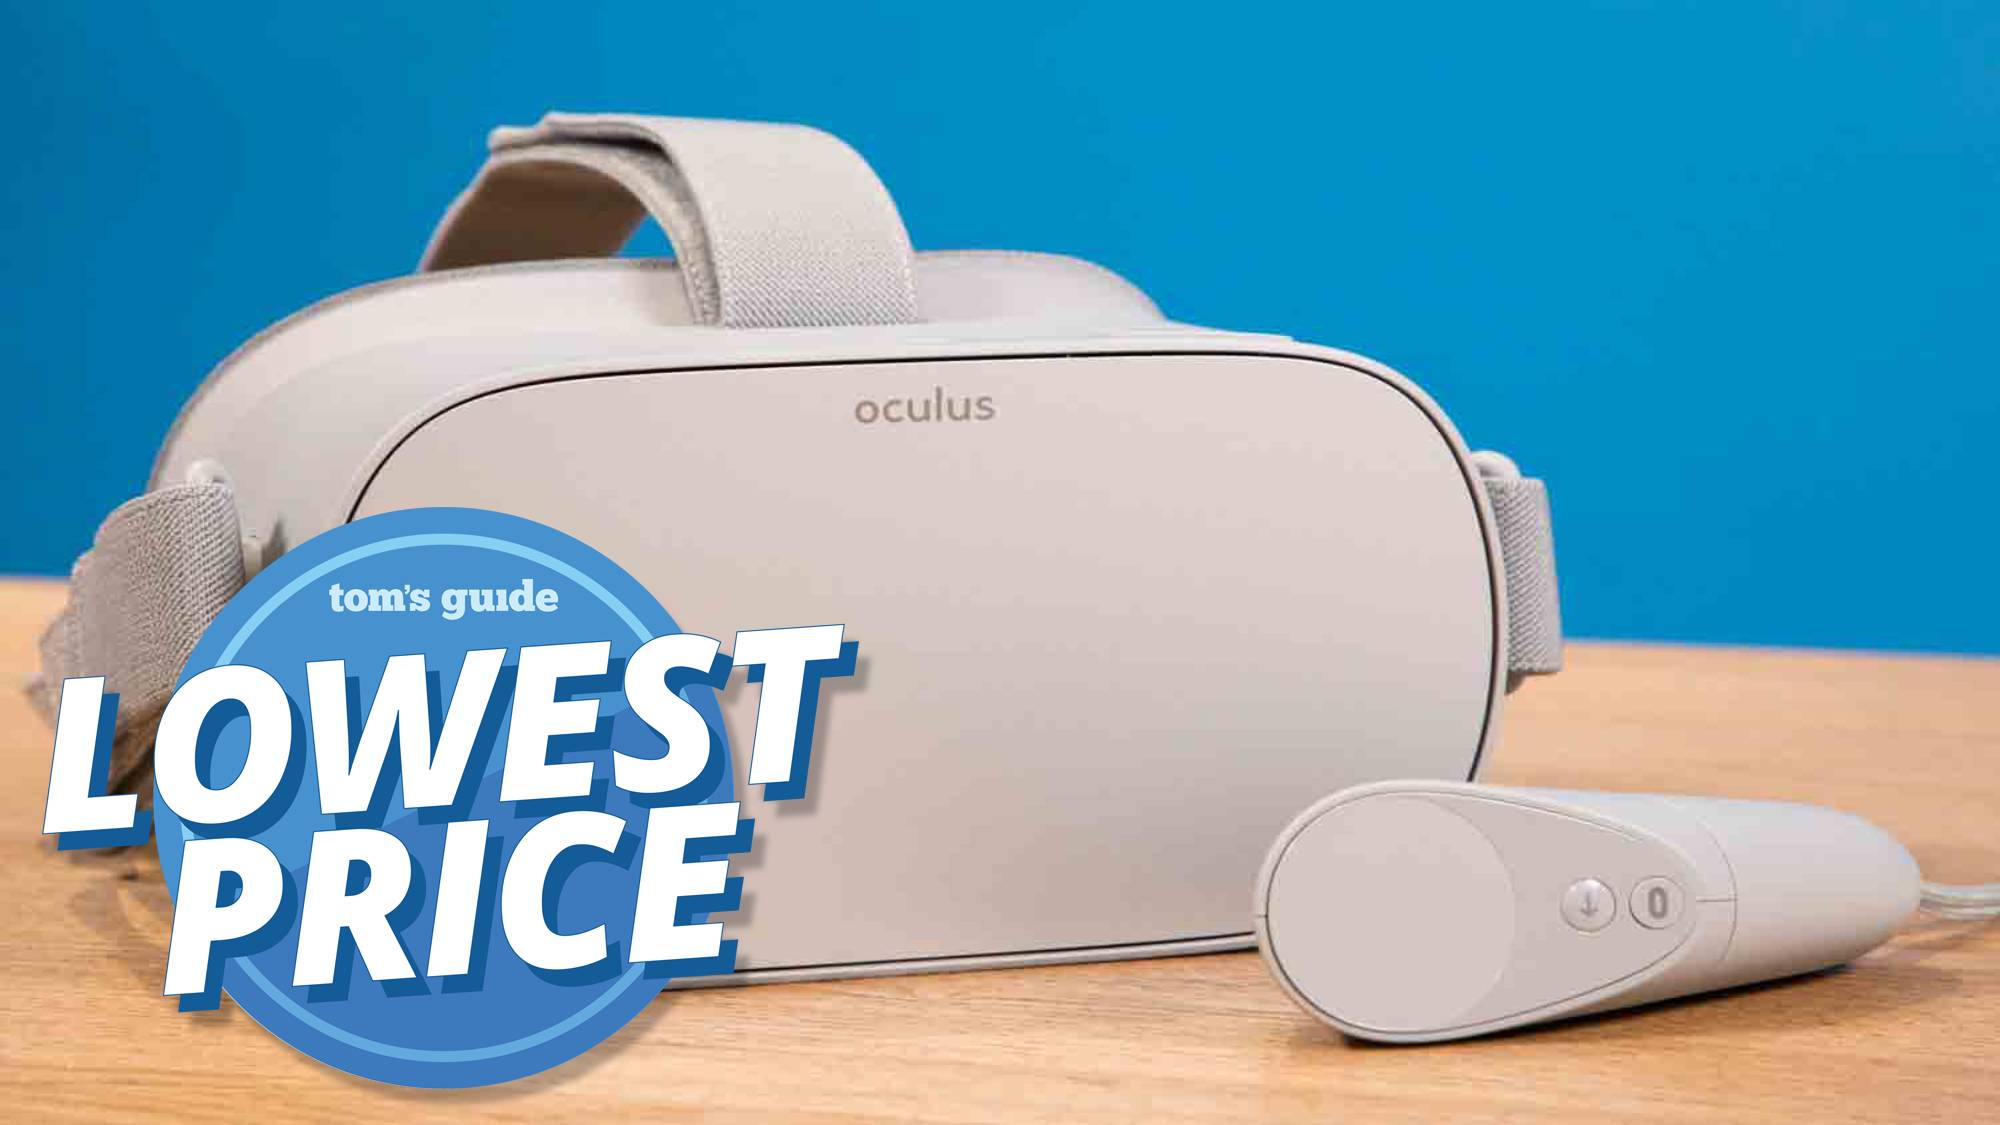 best price oculus go